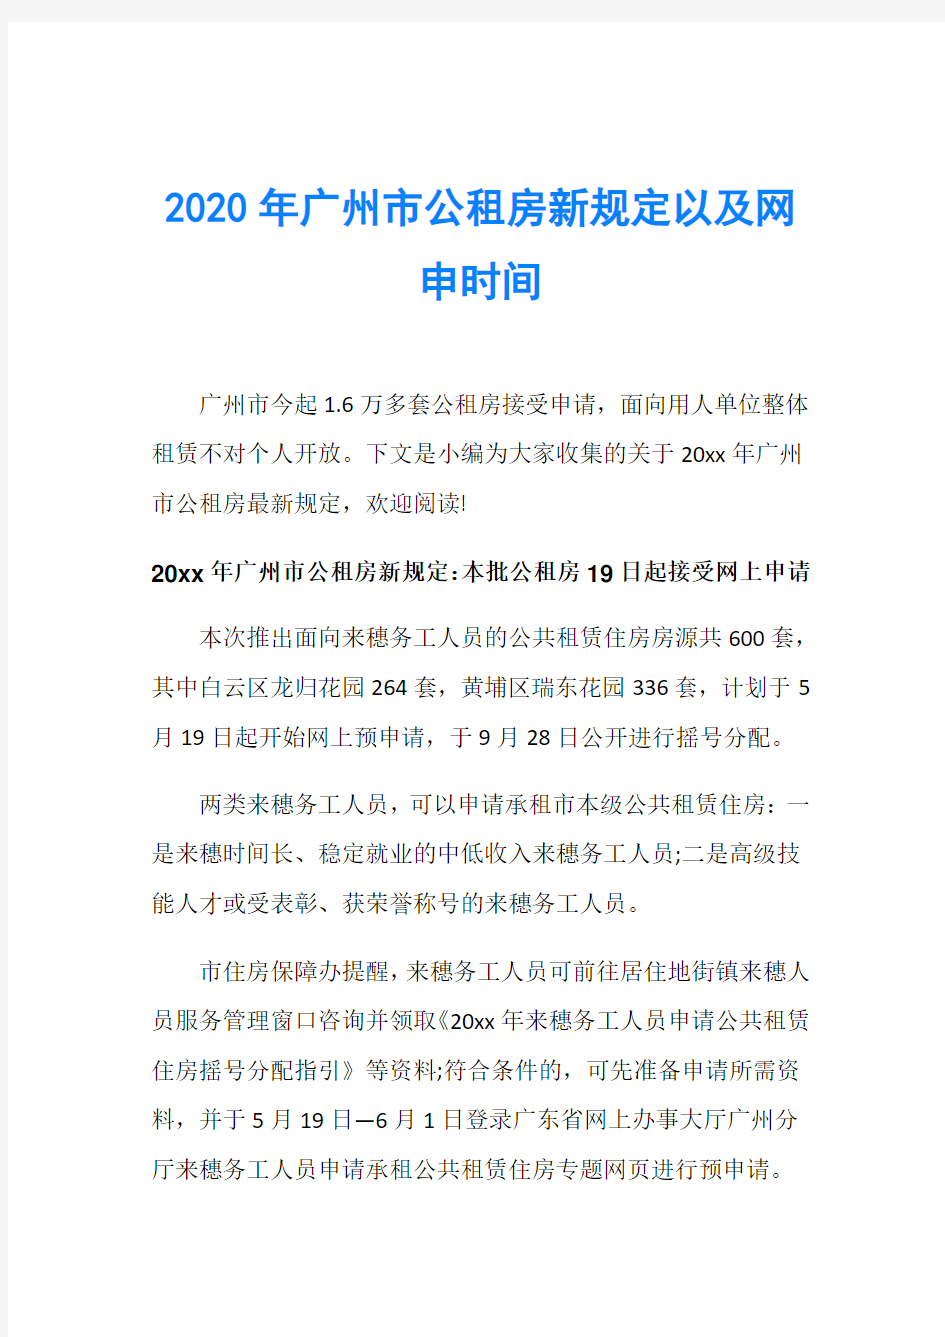 2020年广州市公租房新规定以及网申时间